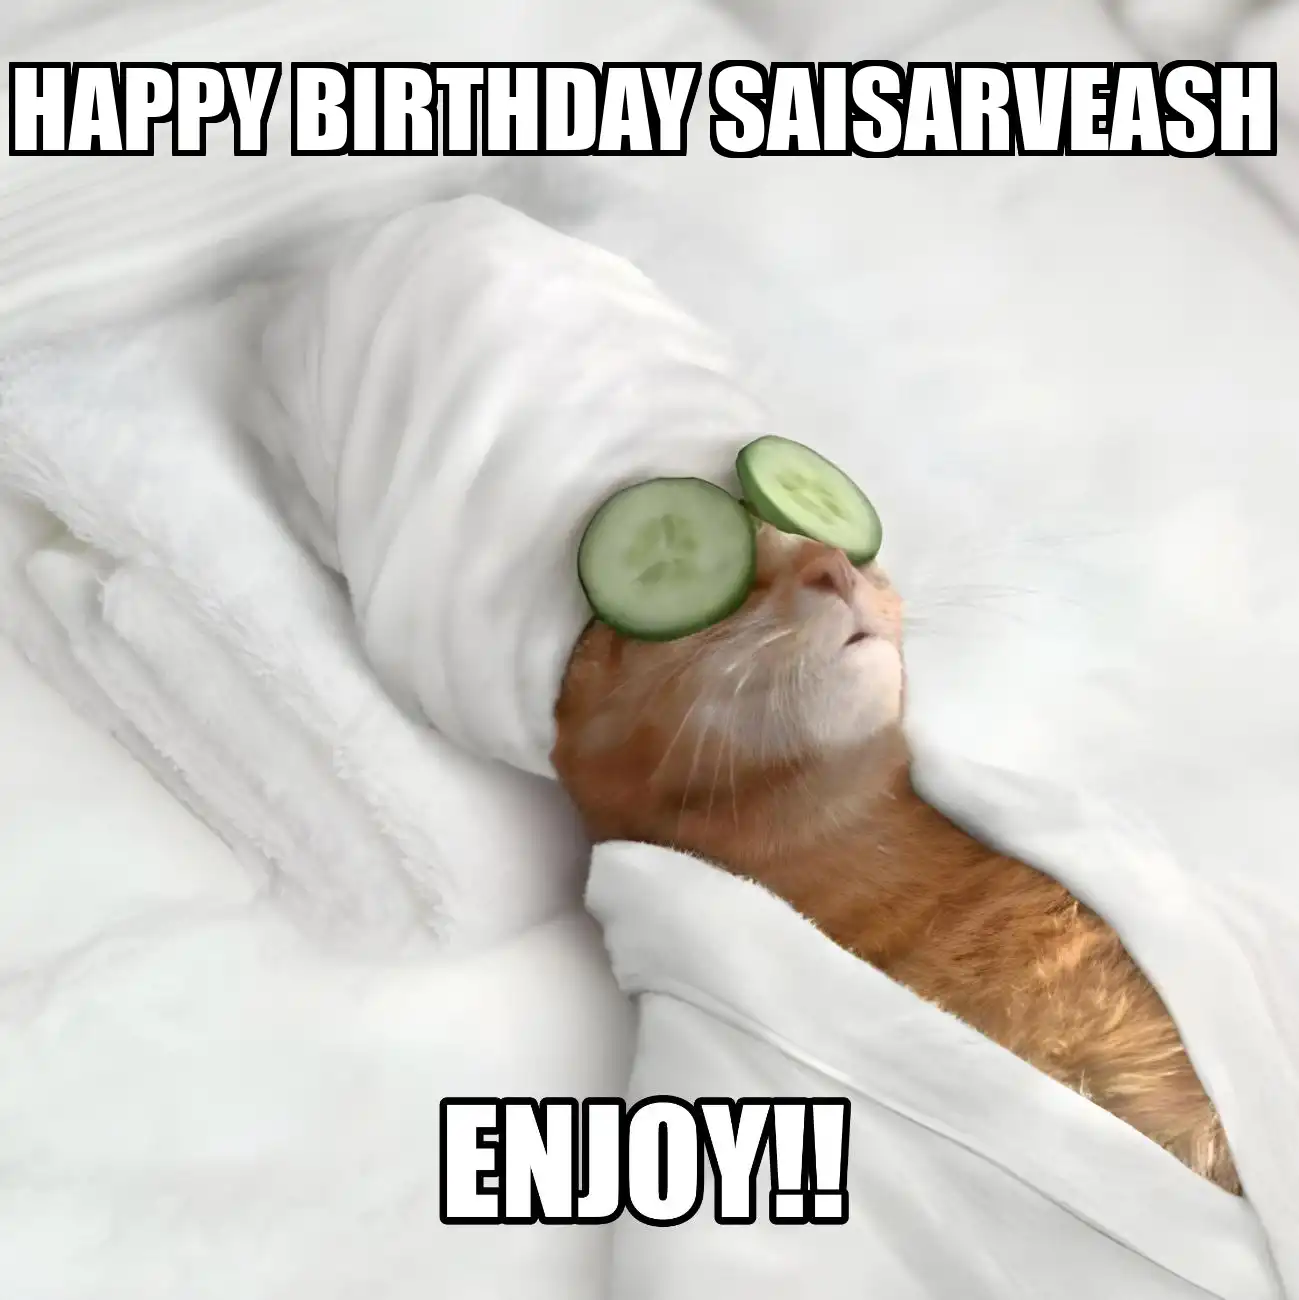 Happy Birthday Saisarveash Enjoy Cat Meme